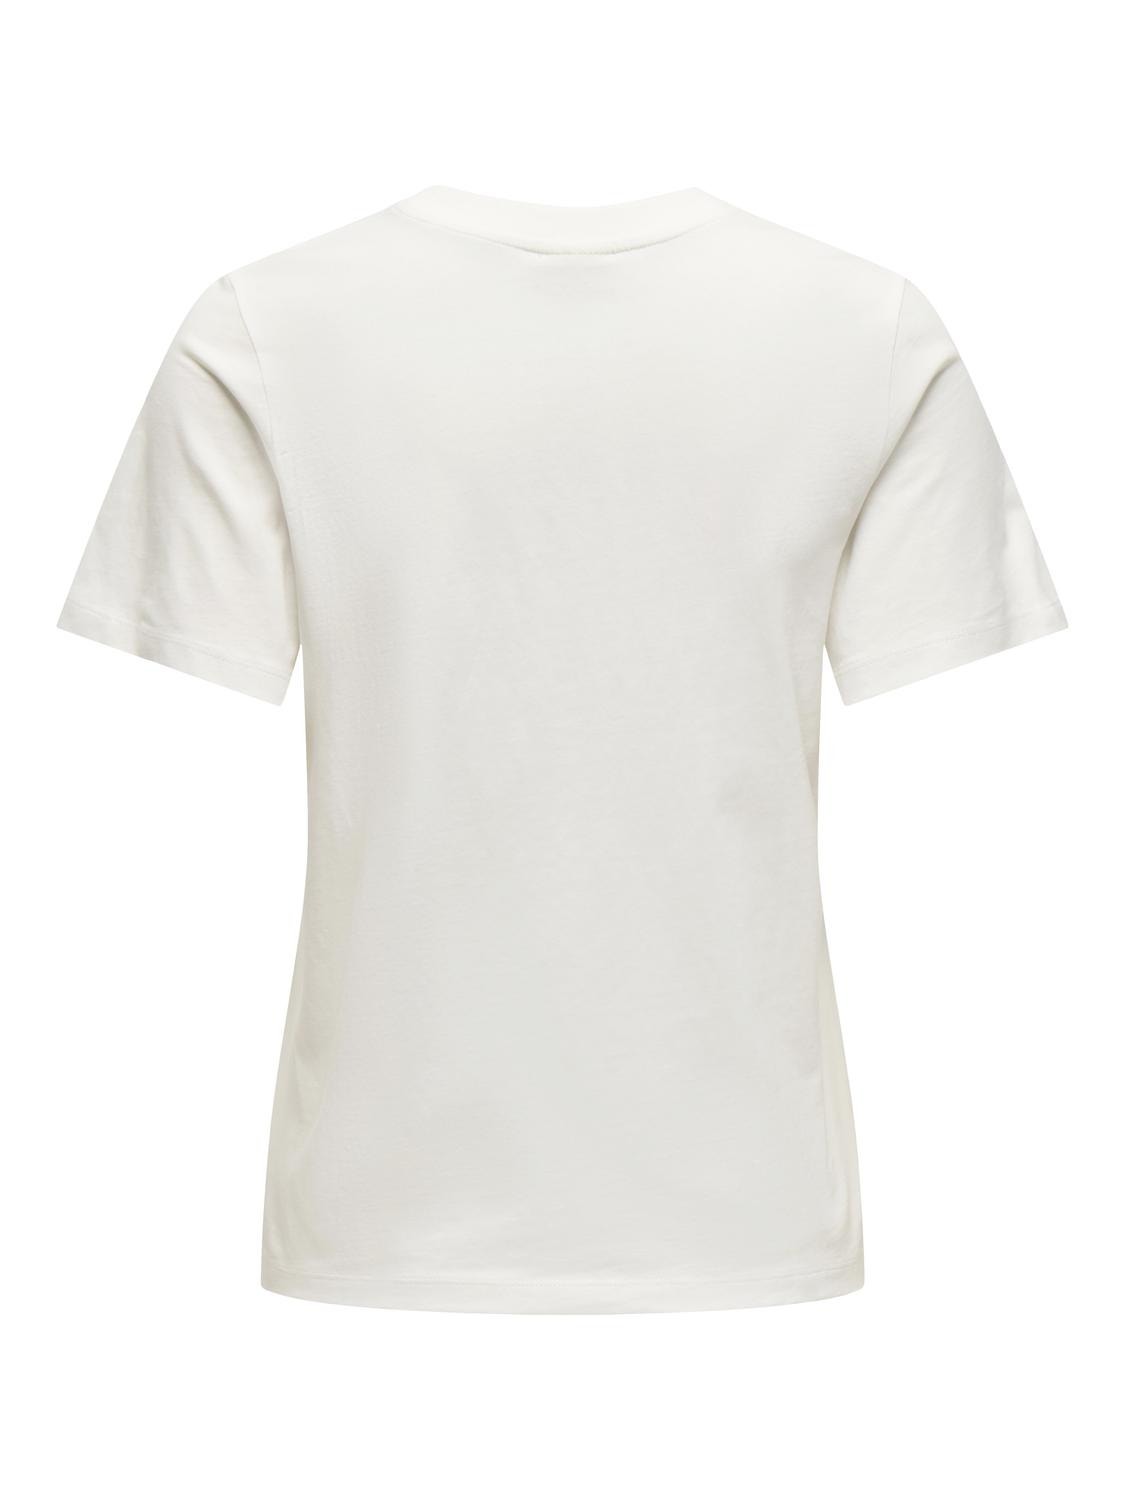 ONLY Normal geschnitten Rundhals T-Shirt -Cloud Dancer - 15292431